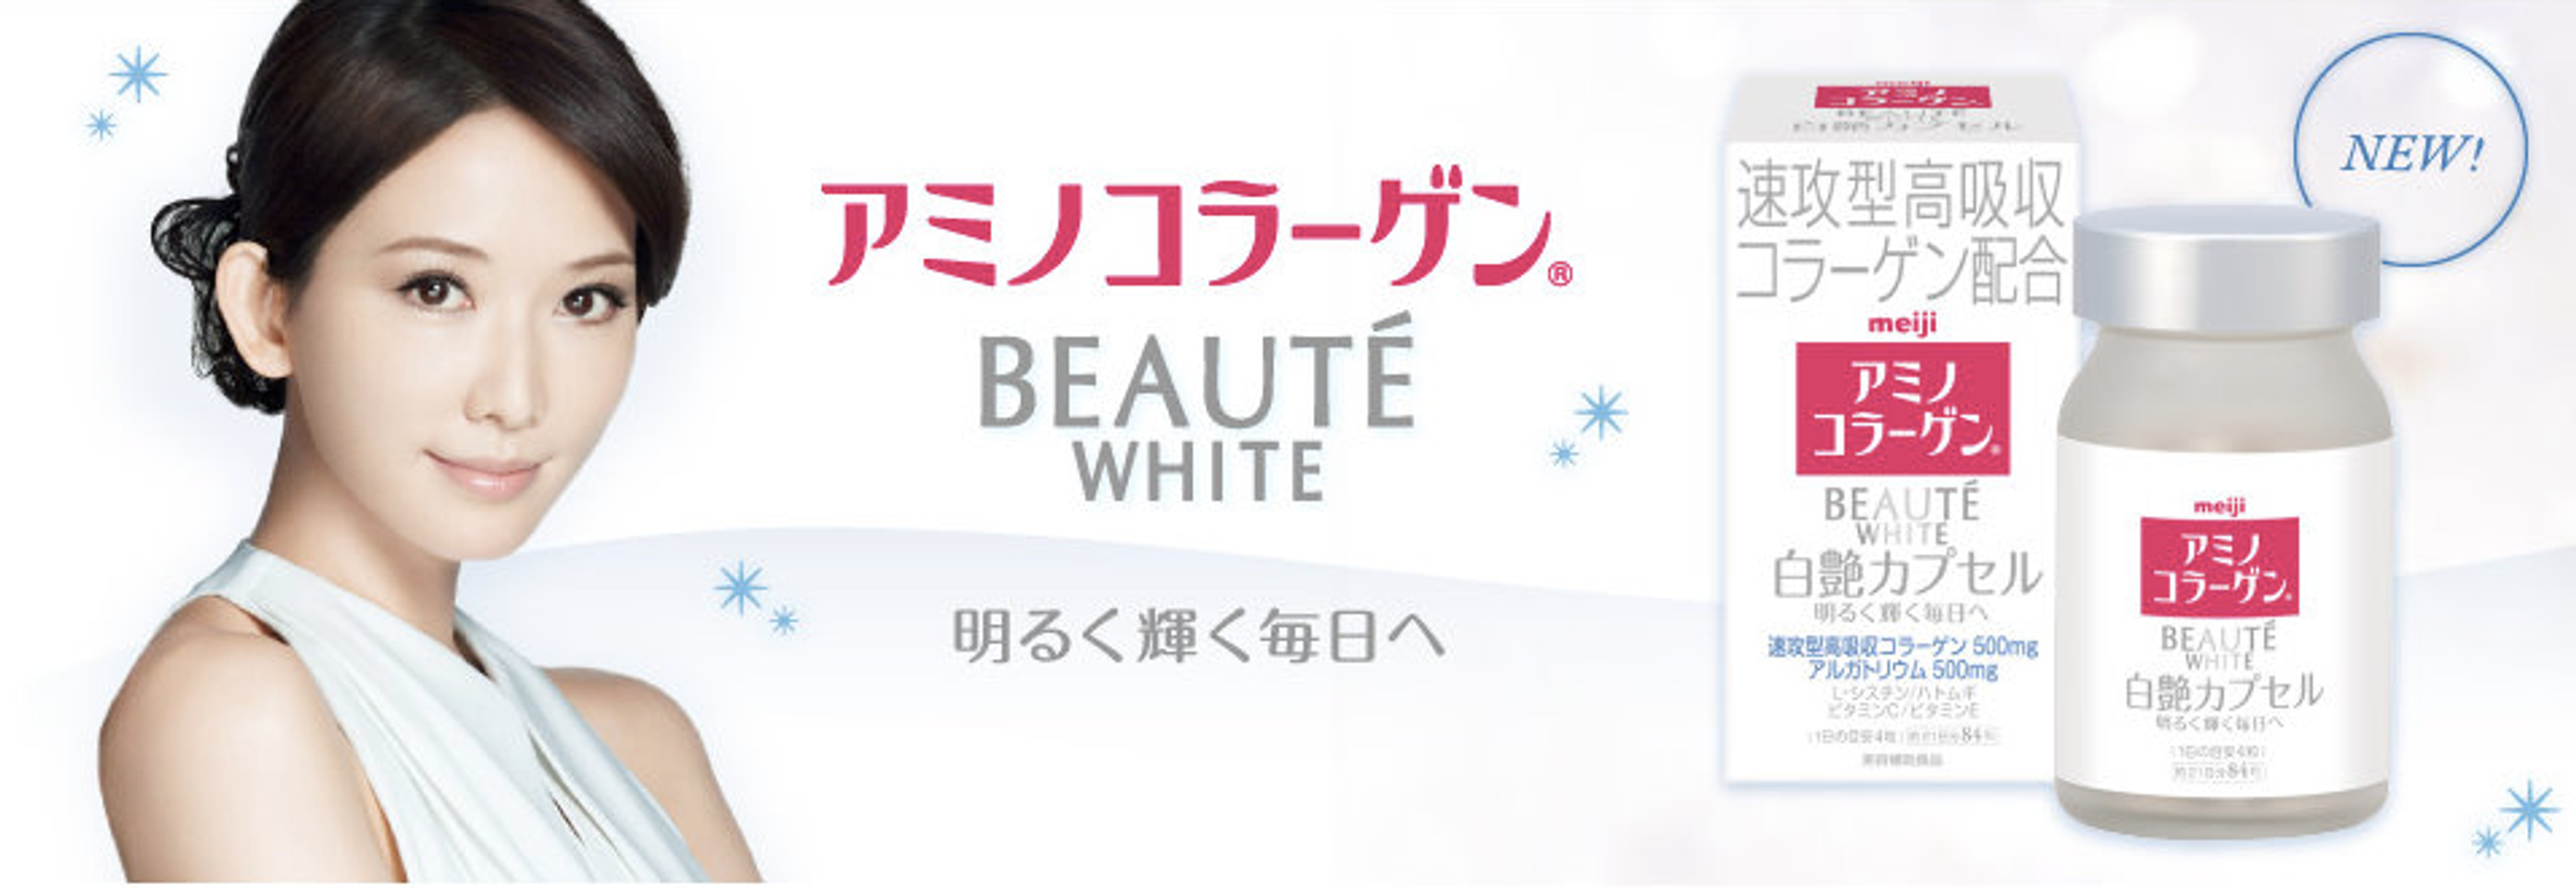 Meiji Collagen Beaute White -Giải pháp trắng da toàn thân, làm mờ nám và tàn nhang nhanh chóng 1